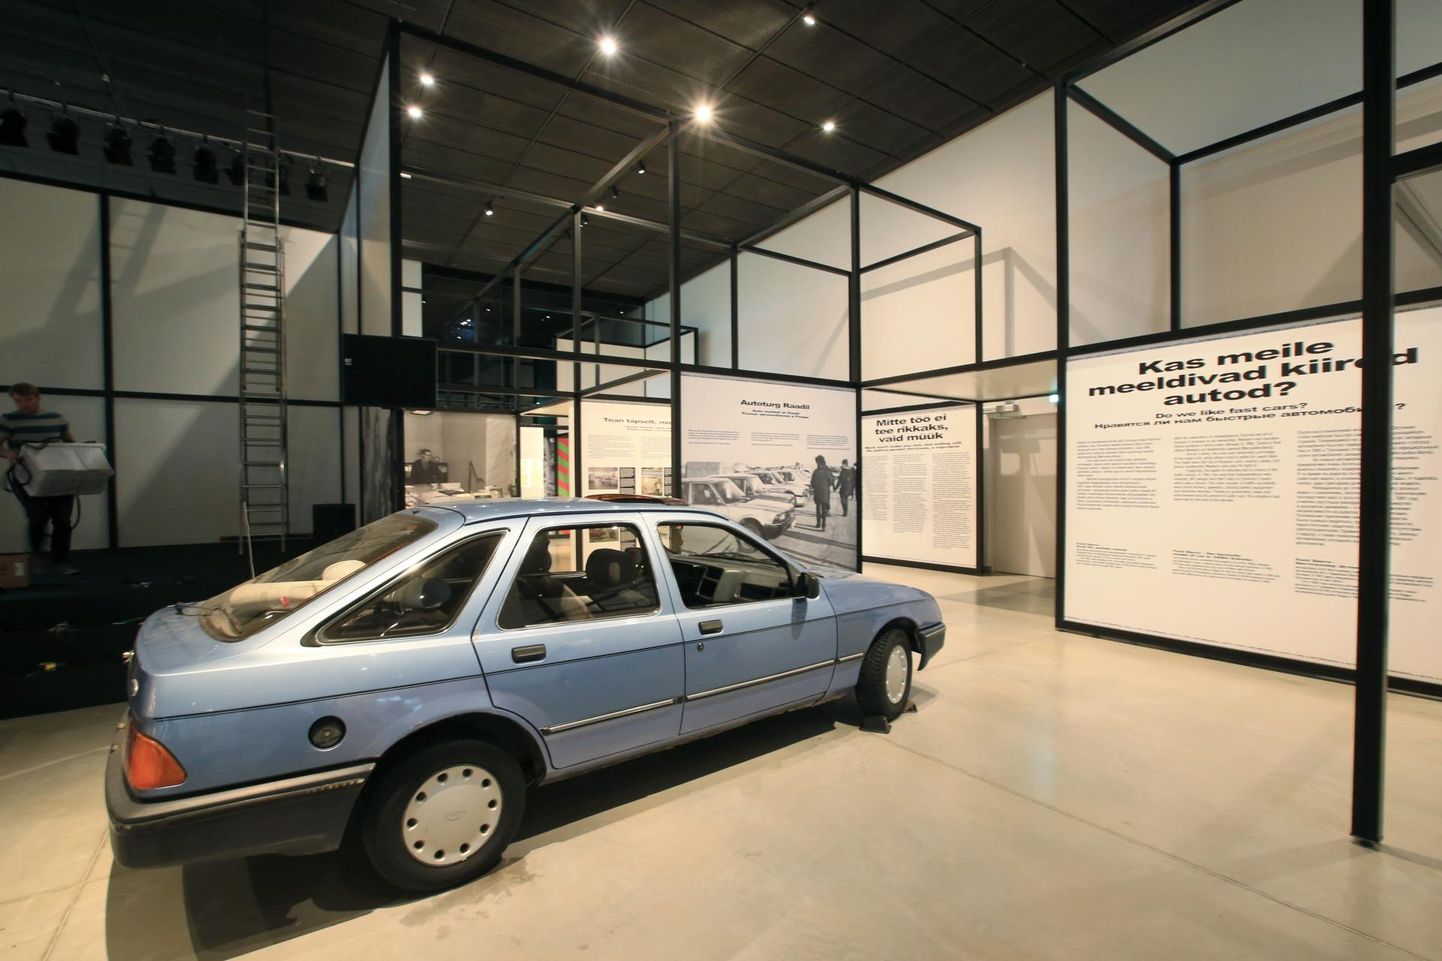 Kultuslik Ford Sierra, mis on Eesti autofolklooris kinnistunud ja jõudnud lauludessegi. Veel kaks aastakümmet tagasi kasutuses olnud tarbeesemed võivad näituse vaatajates tekitada nostalgiatunde, kuid ka küsimuse, miks neid üldse eksponeerima peaks.